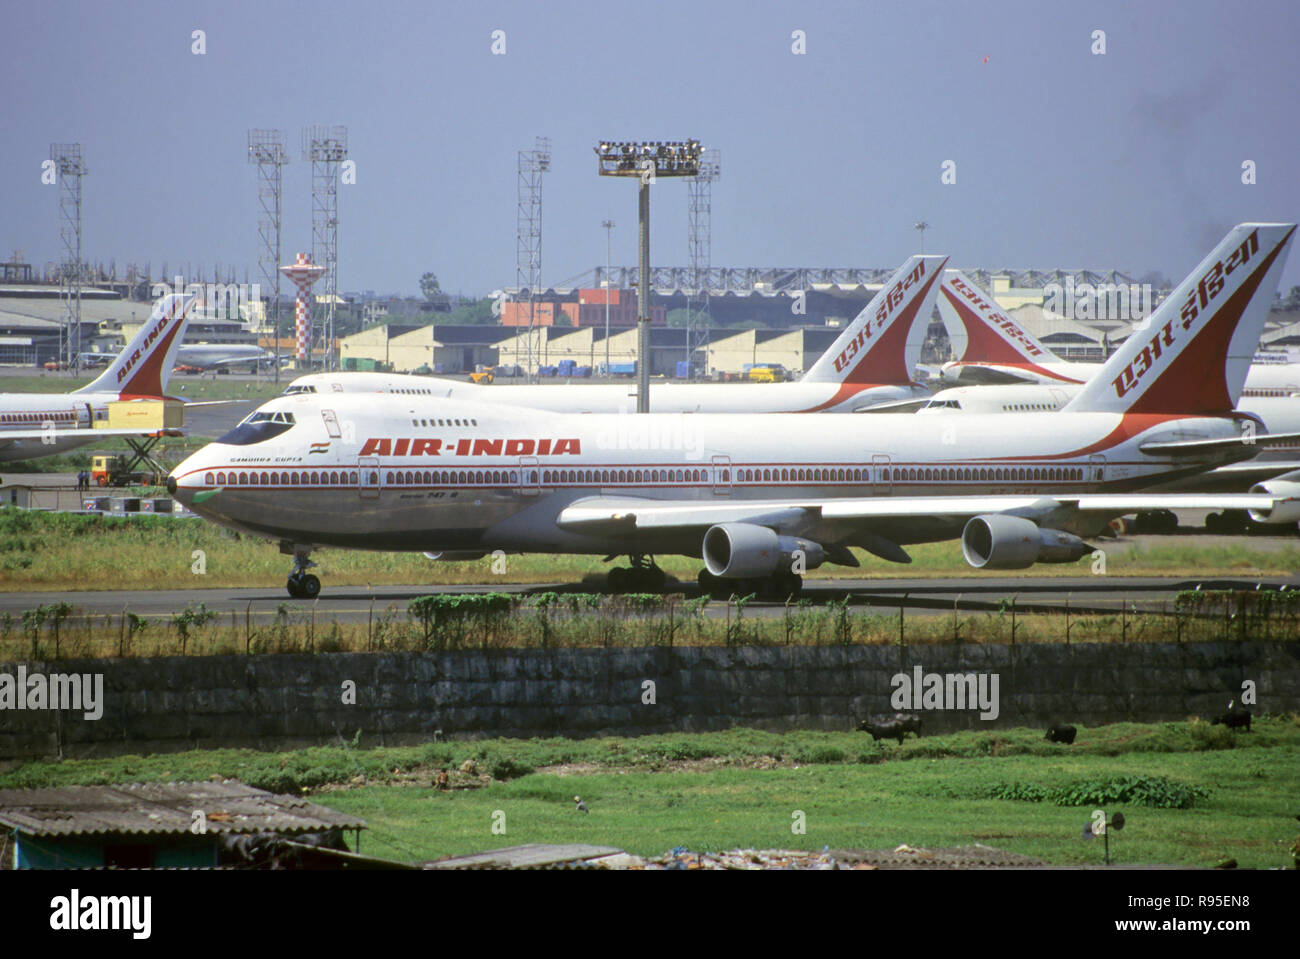 Air India Aeroplanes on airport, bombay mumbai, Maharashtra, india Stock Photo